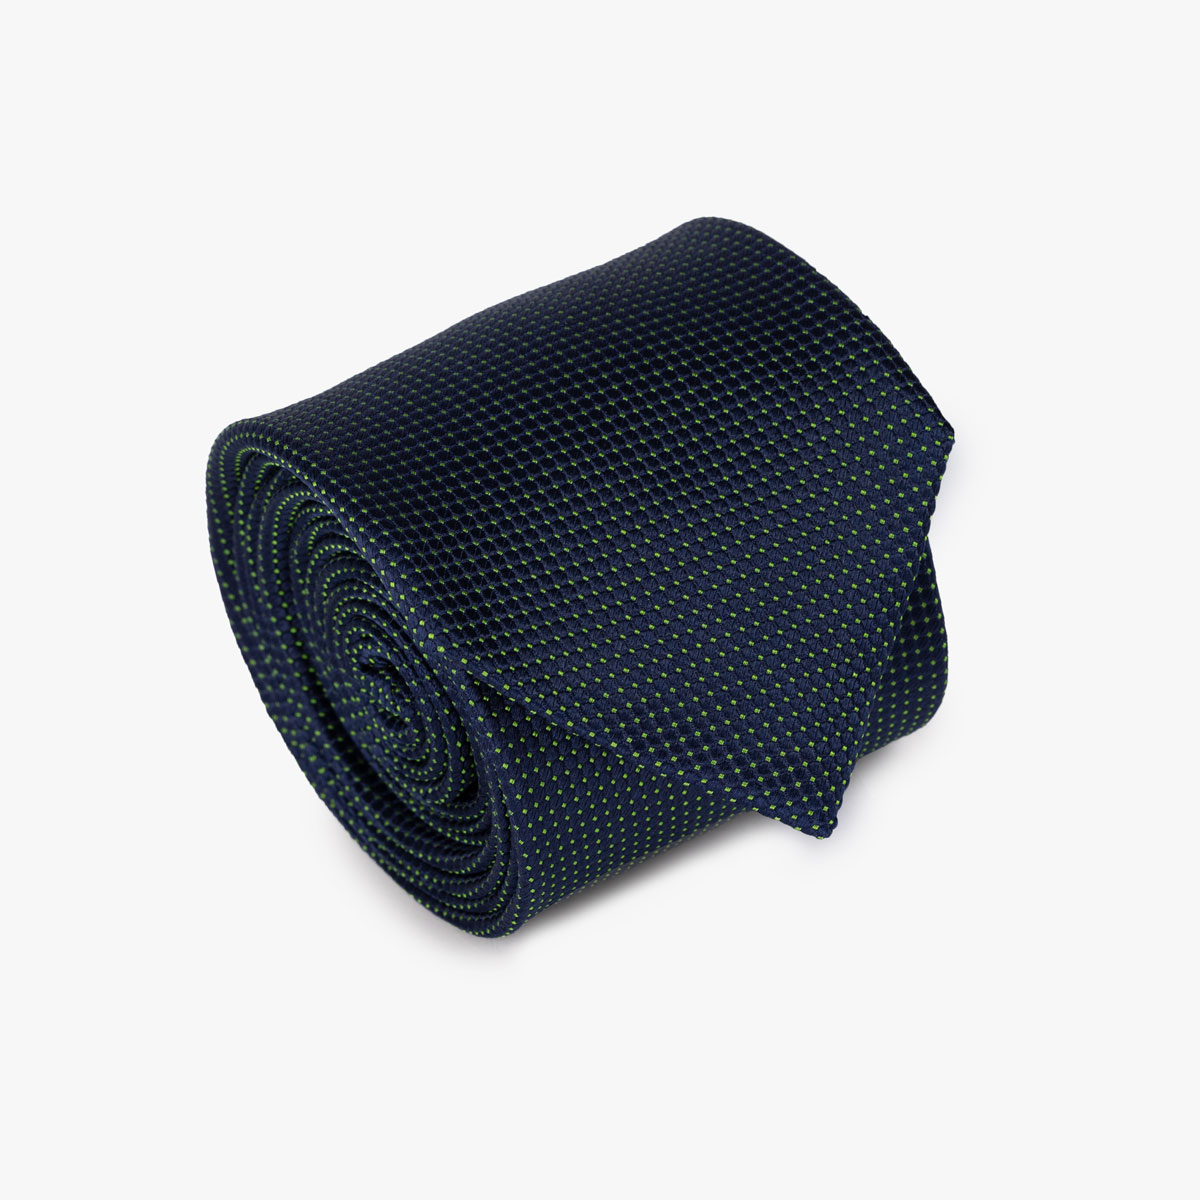 Krawatte mit Allover-Muster in blau